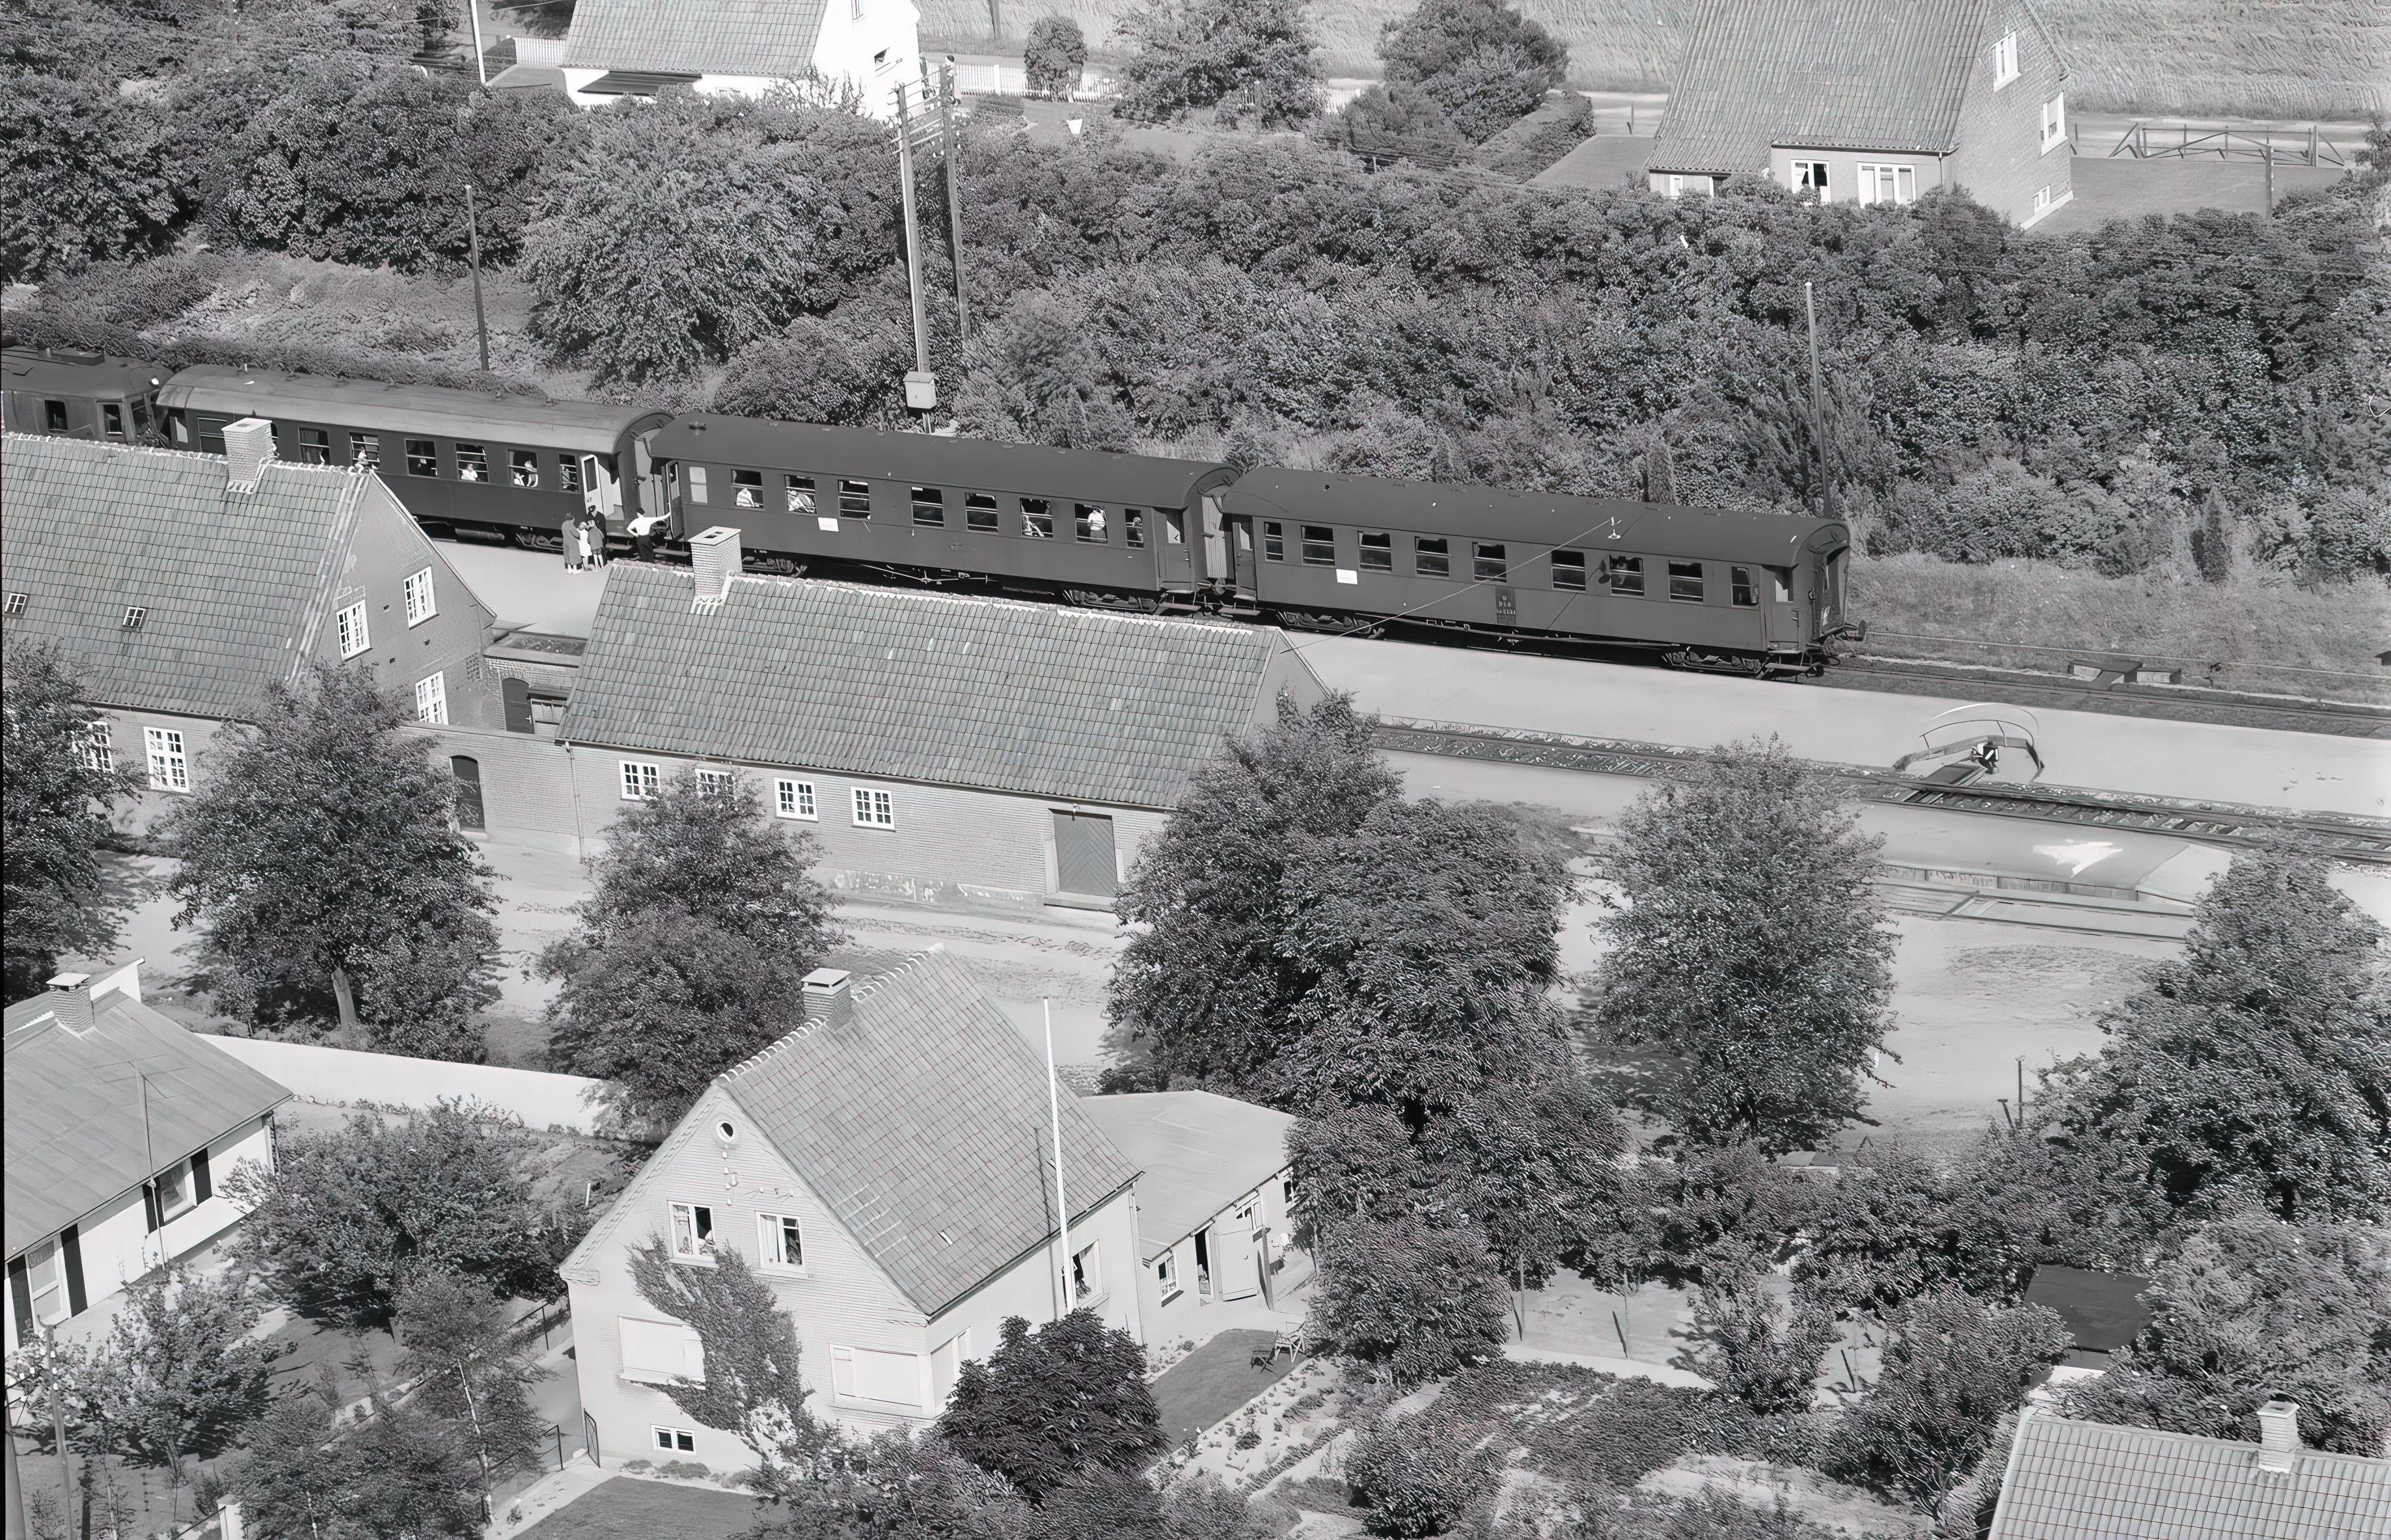 Billede af tog ud for Bråby Station, som blev nedsat til Bråby Trinbræt i 1960.